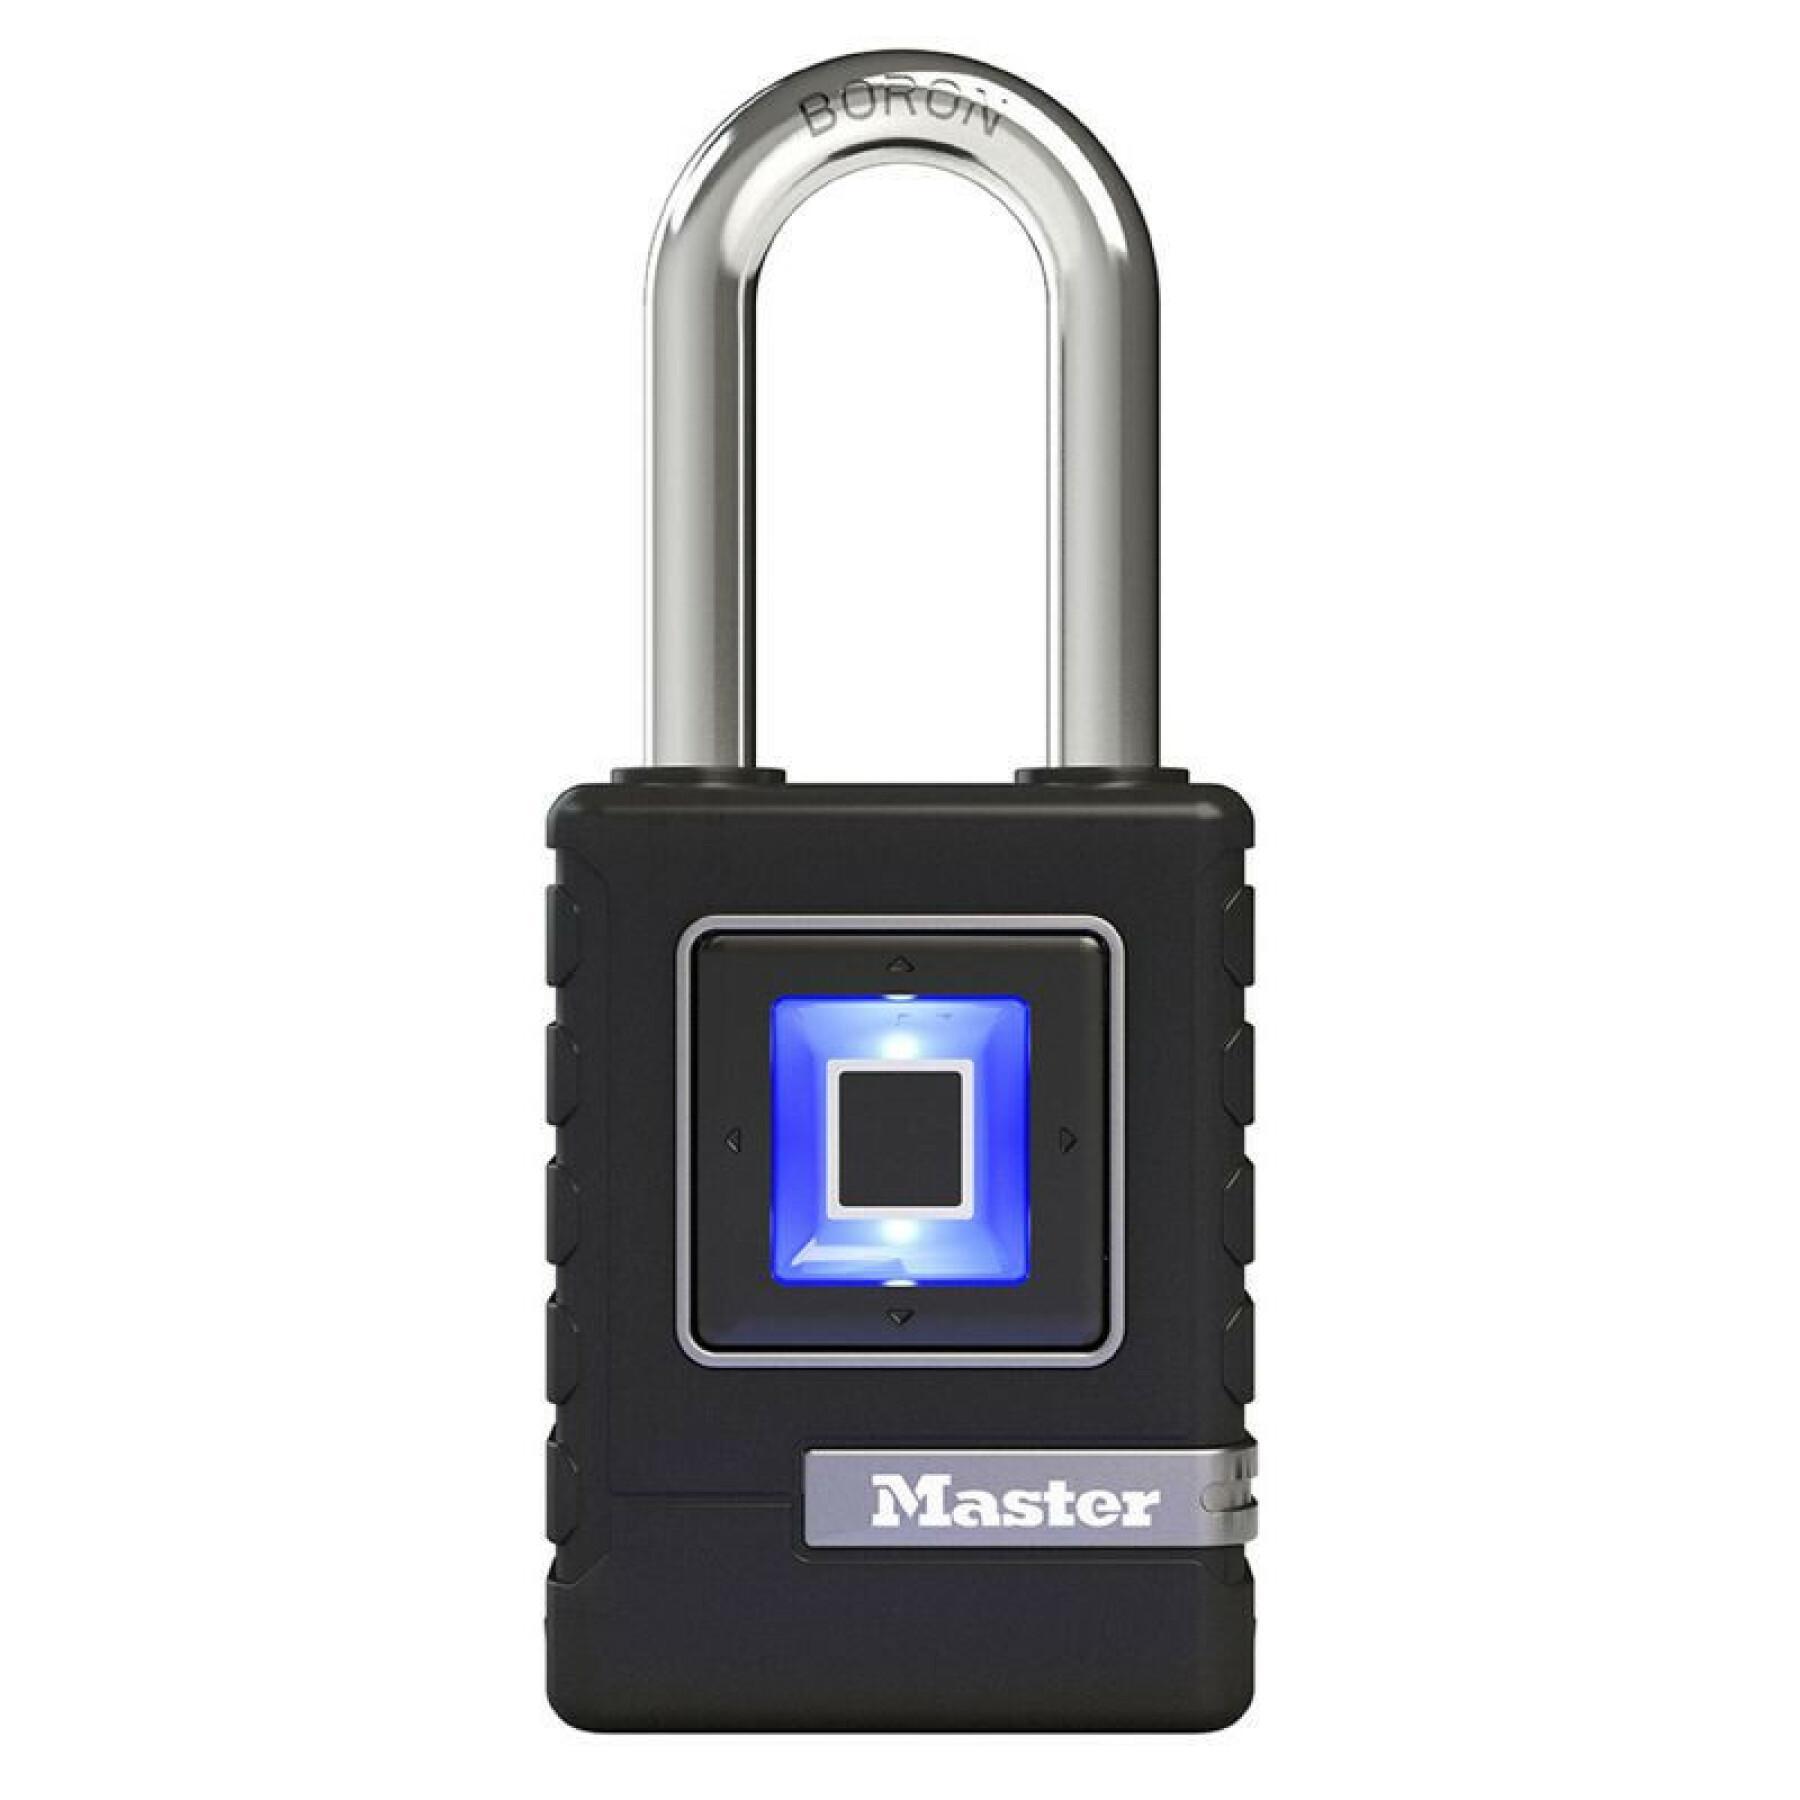 Biometriskt stöldskydd hänglås kan lagra 10 fingeravtryck säkerhetsnivå 8 masterlock